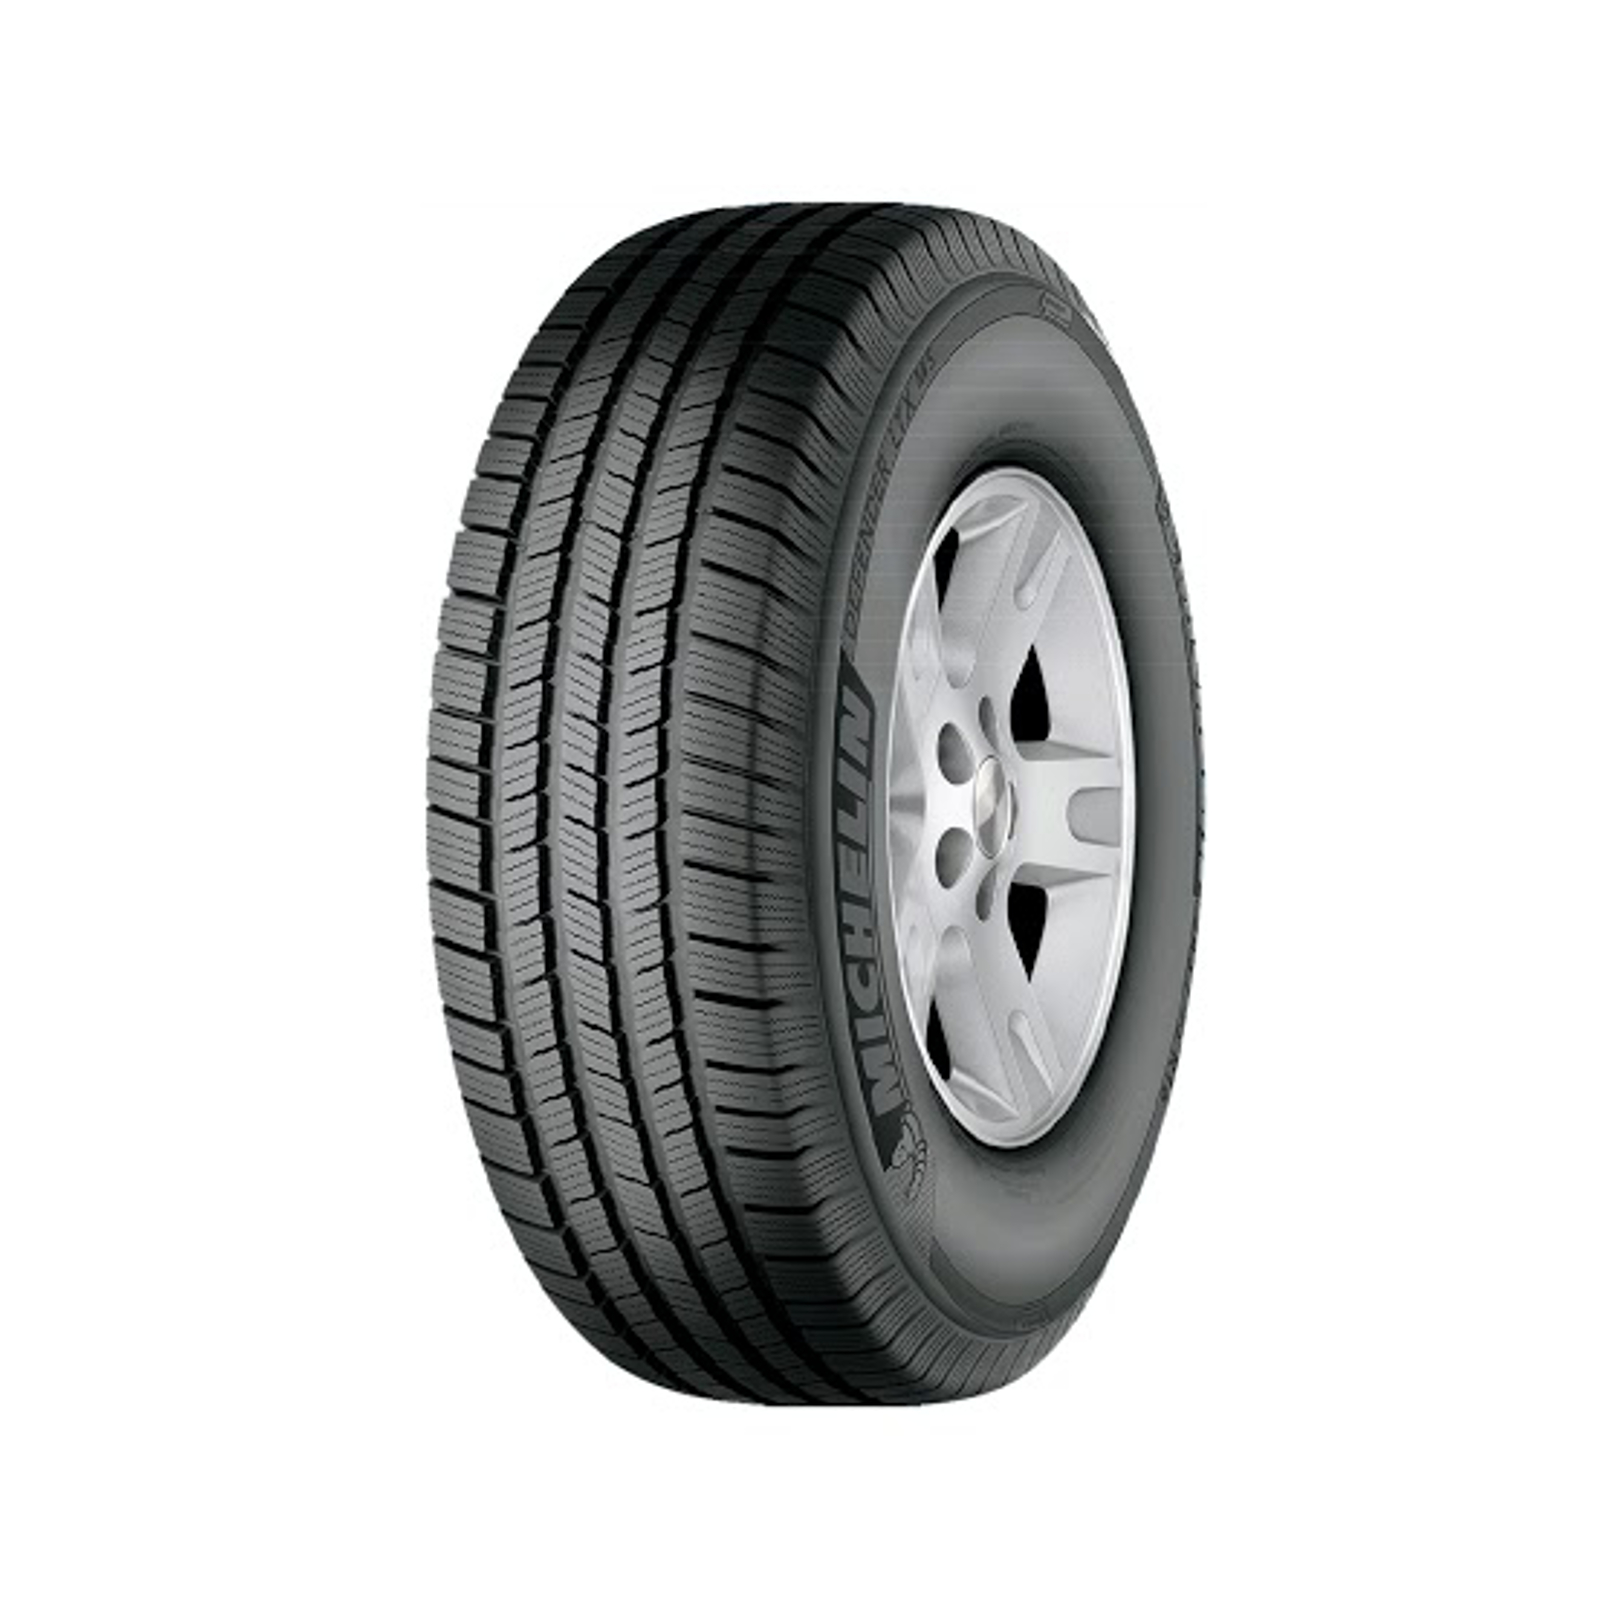 Michelin Defender LTX M S 285 45R22 110H All Season Tire